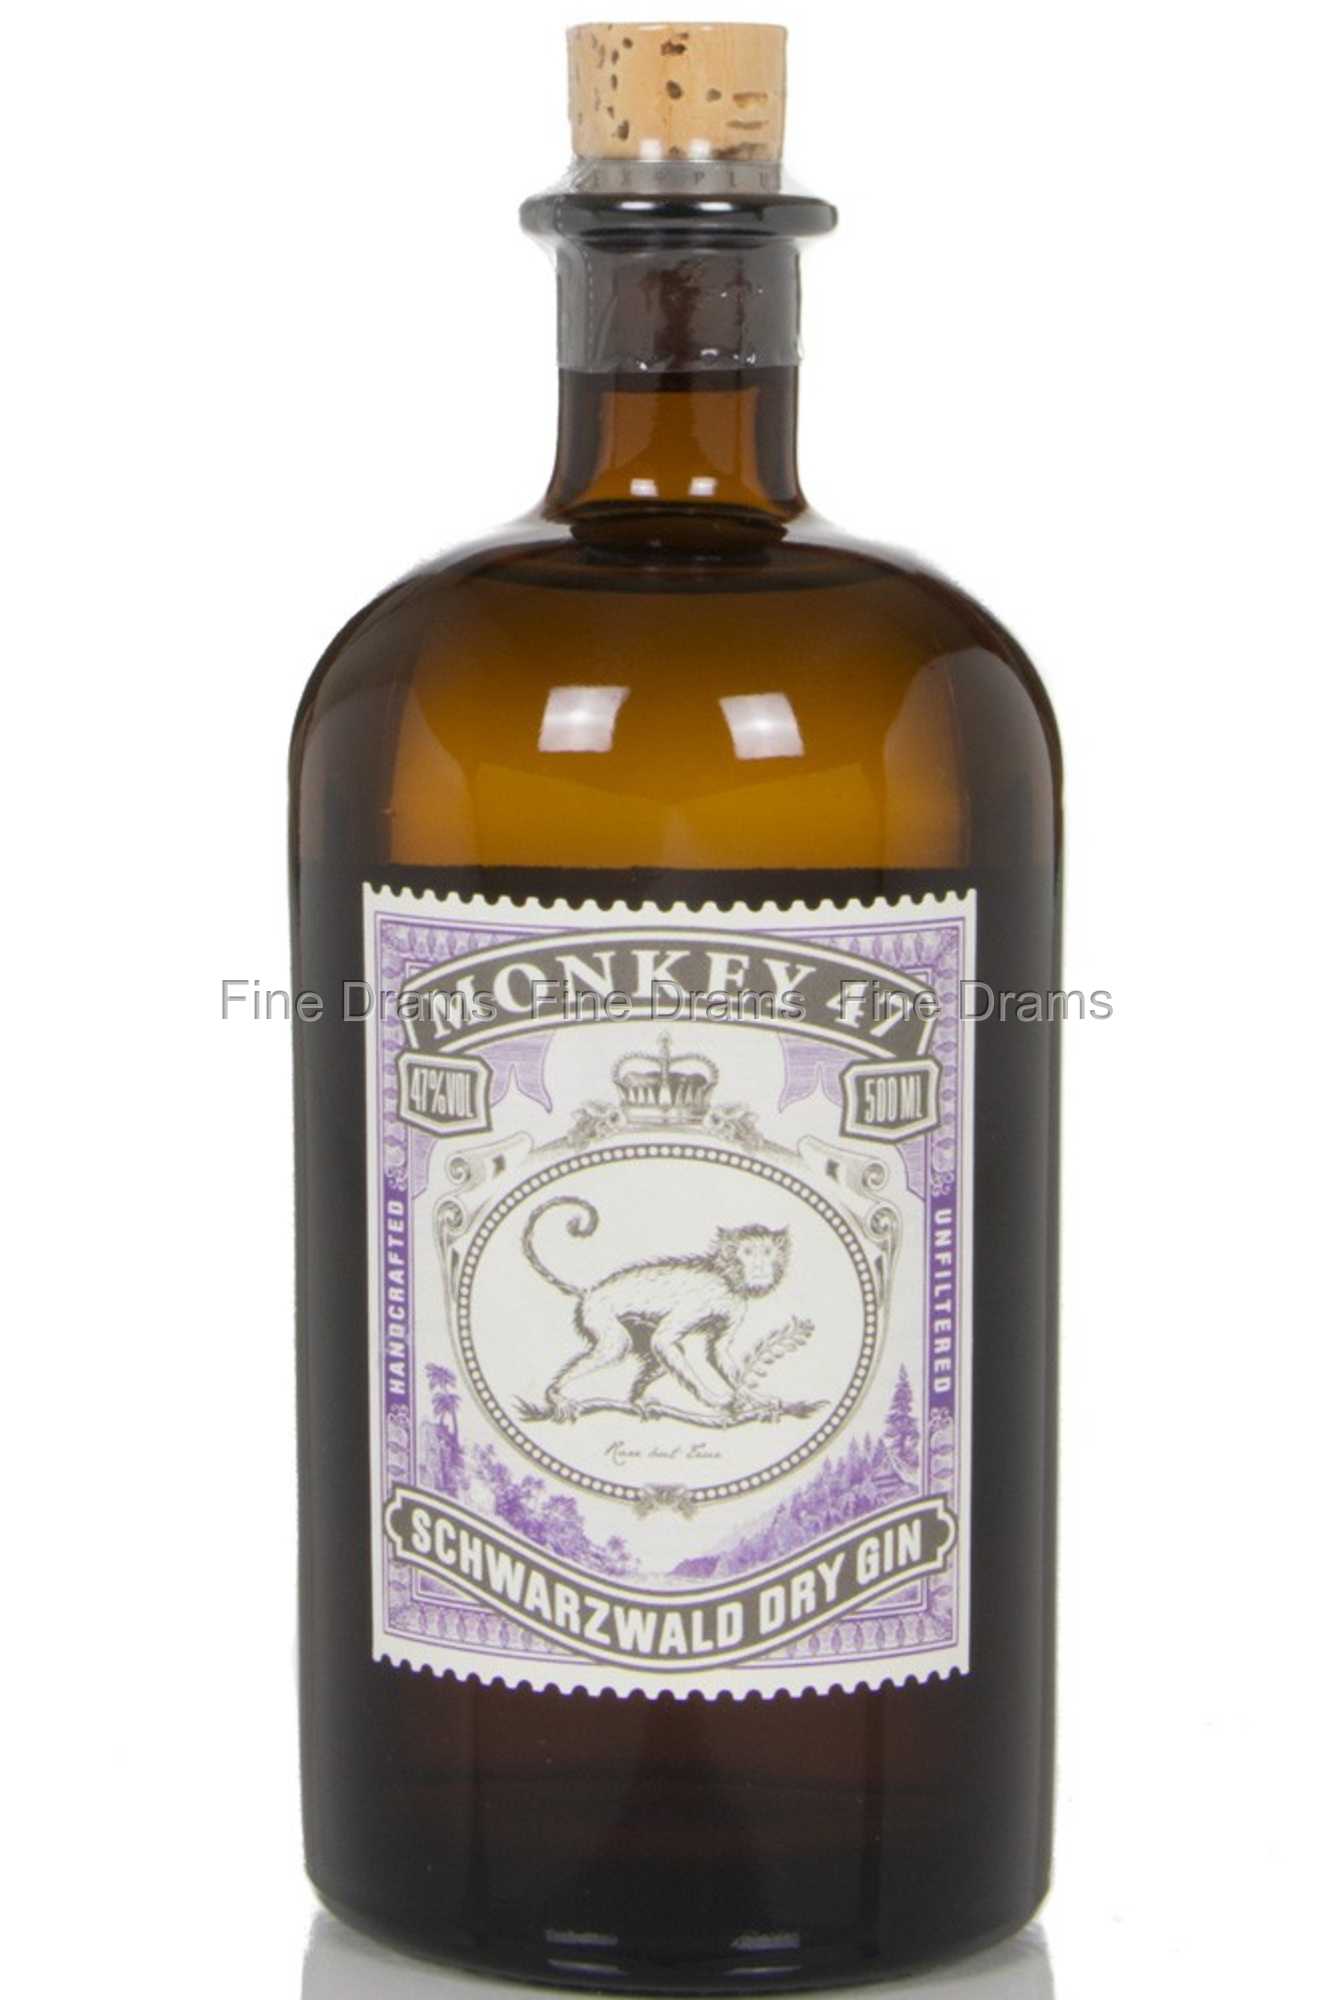 [Dieser Frühling/Herbst ist auch der beliebteste] Monkey 47 Gin Schwarzwald Dry